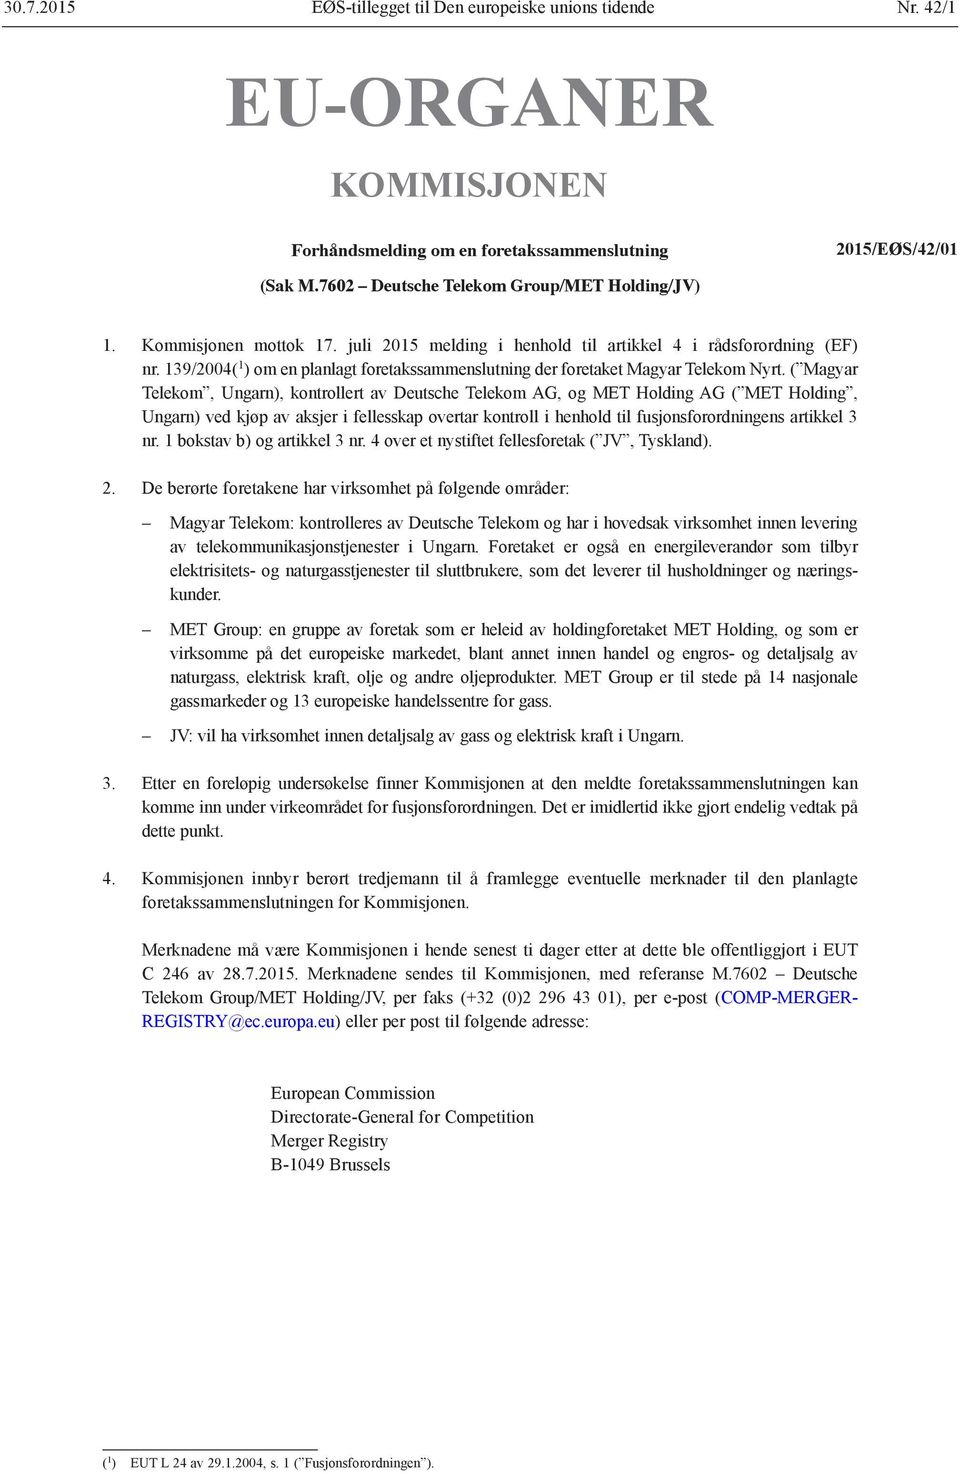 ( Magyar Telekom, Ungarn), kontrollert av Deutsche Telekom AG, og MET Holding AG ( MET Holding, Ungarn) ved kjøp av aksjer i fellesskap overtar kontroll i henhold til fusjonsforordningens artikkel 3